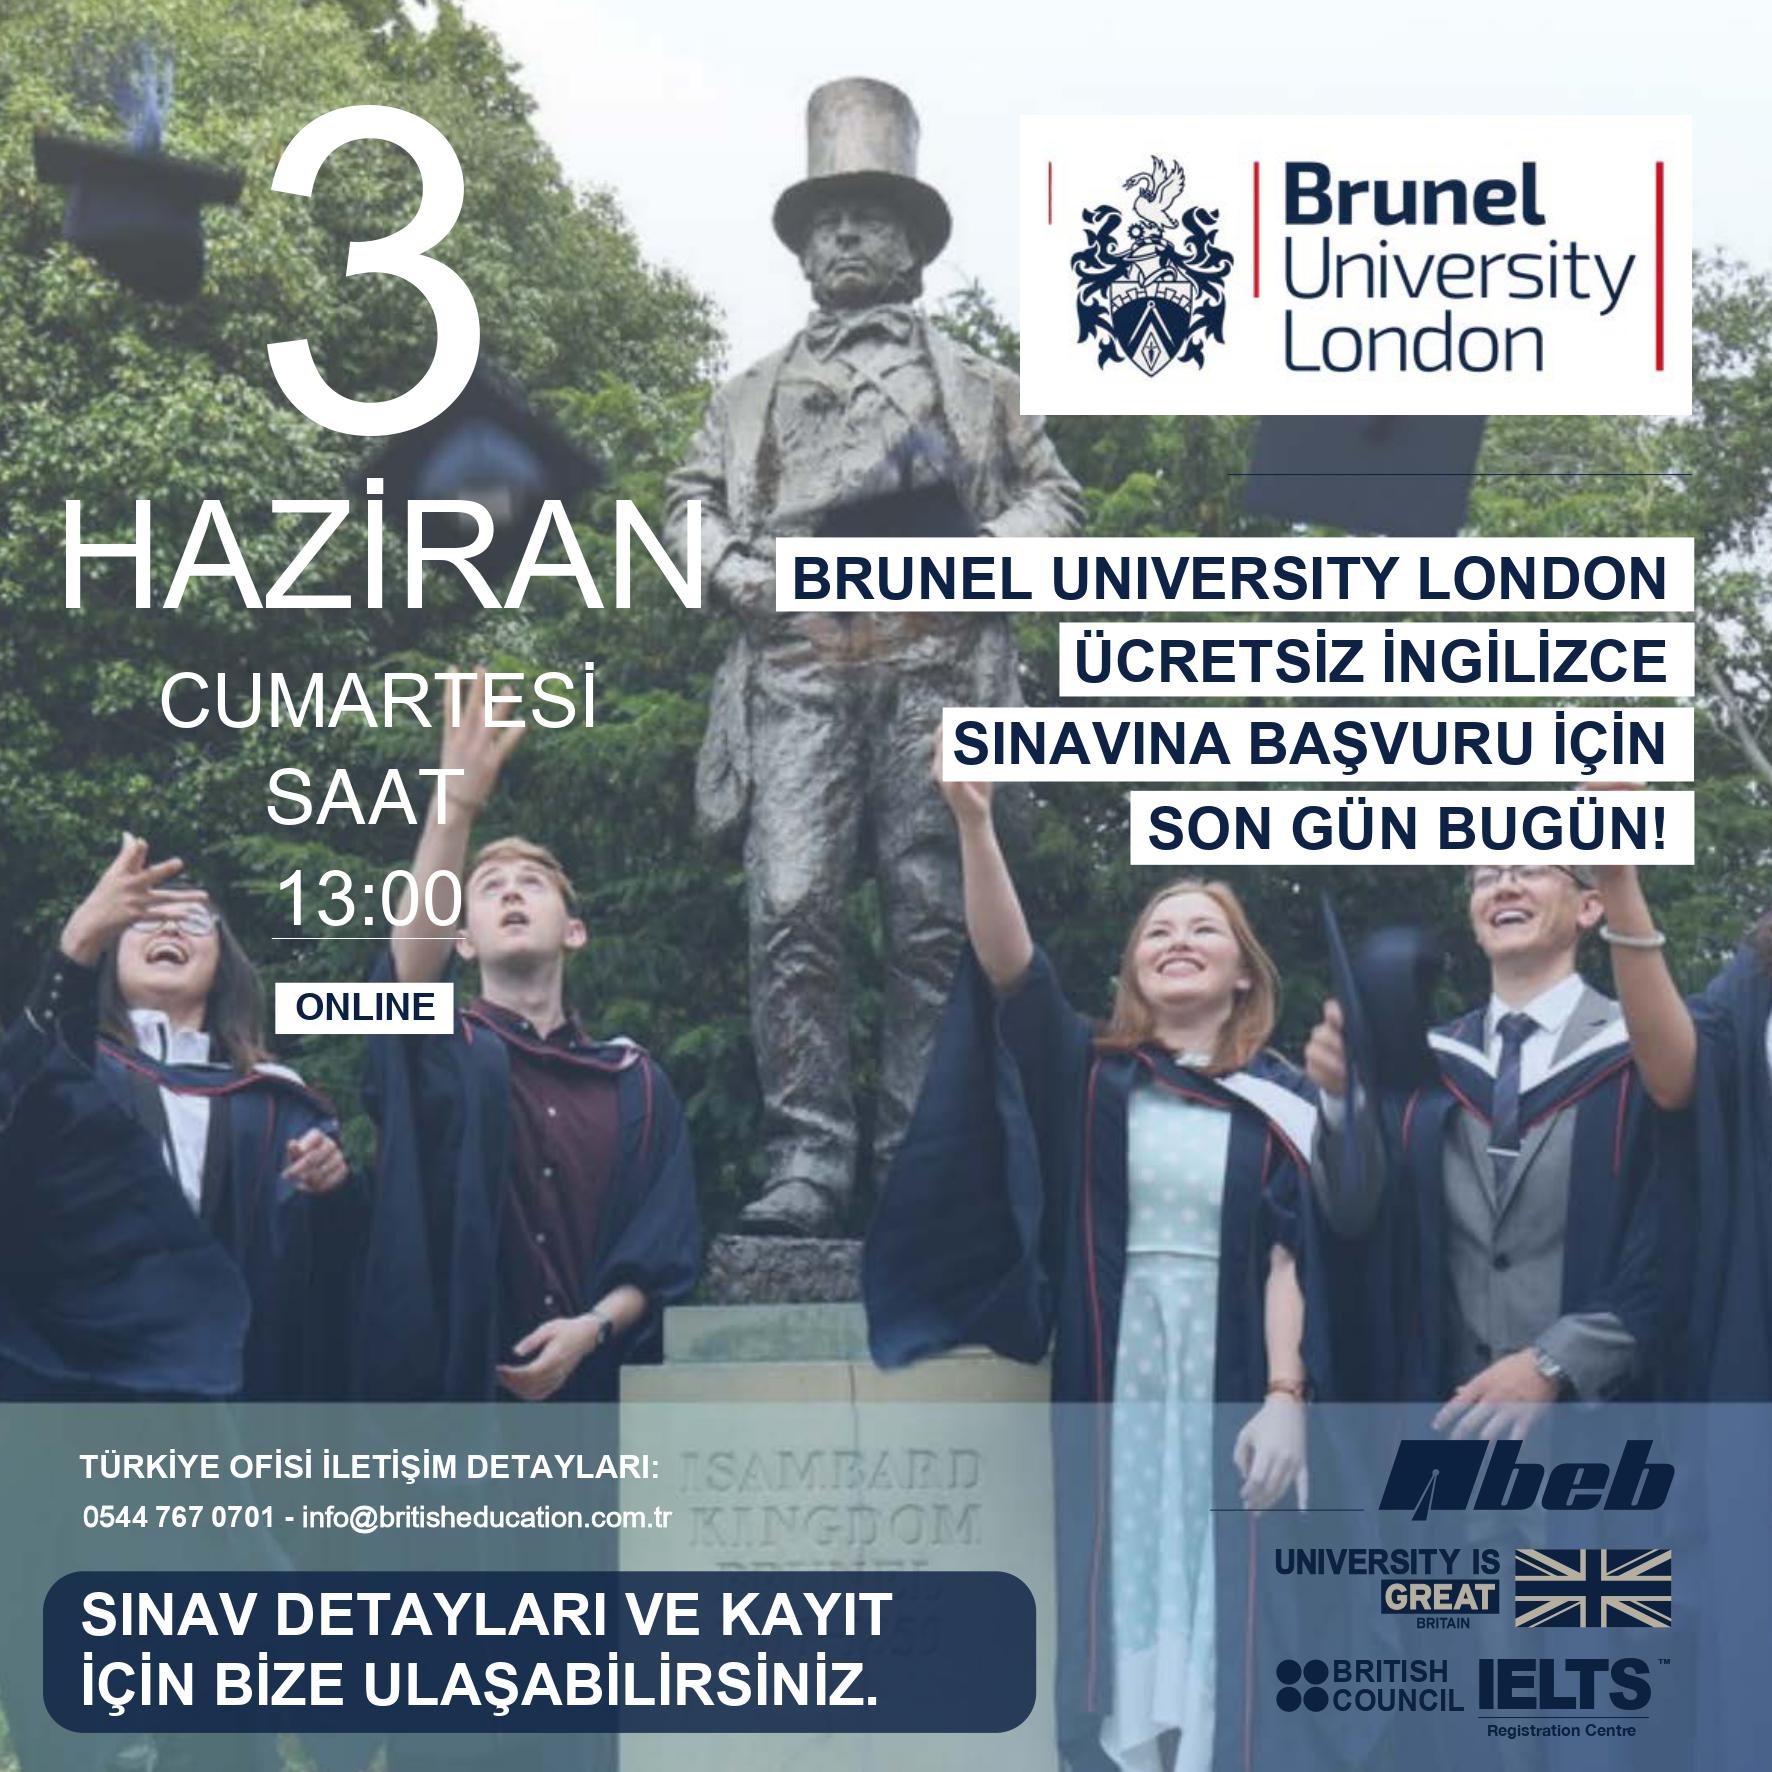 Londra'nın önde gelen üniversitelerinden Brunel University London'ın mezuniyetlerini kutlayan öğrencilerinin ve ücretsiz dil sınavına ait detayların bulunduğu tanıtım görseli